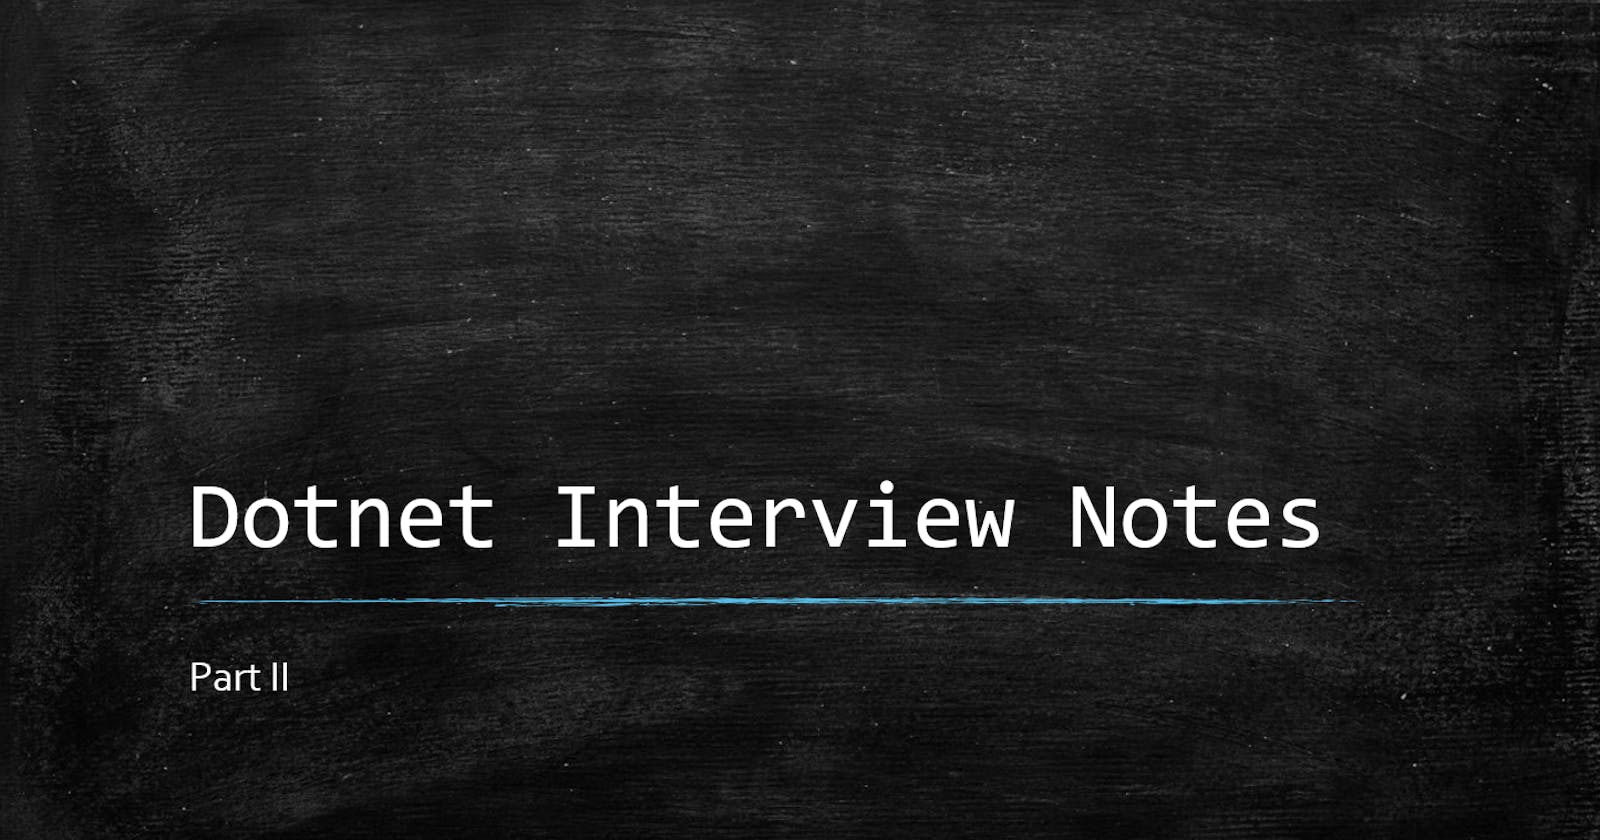 Dotnet Interview Notes Part II